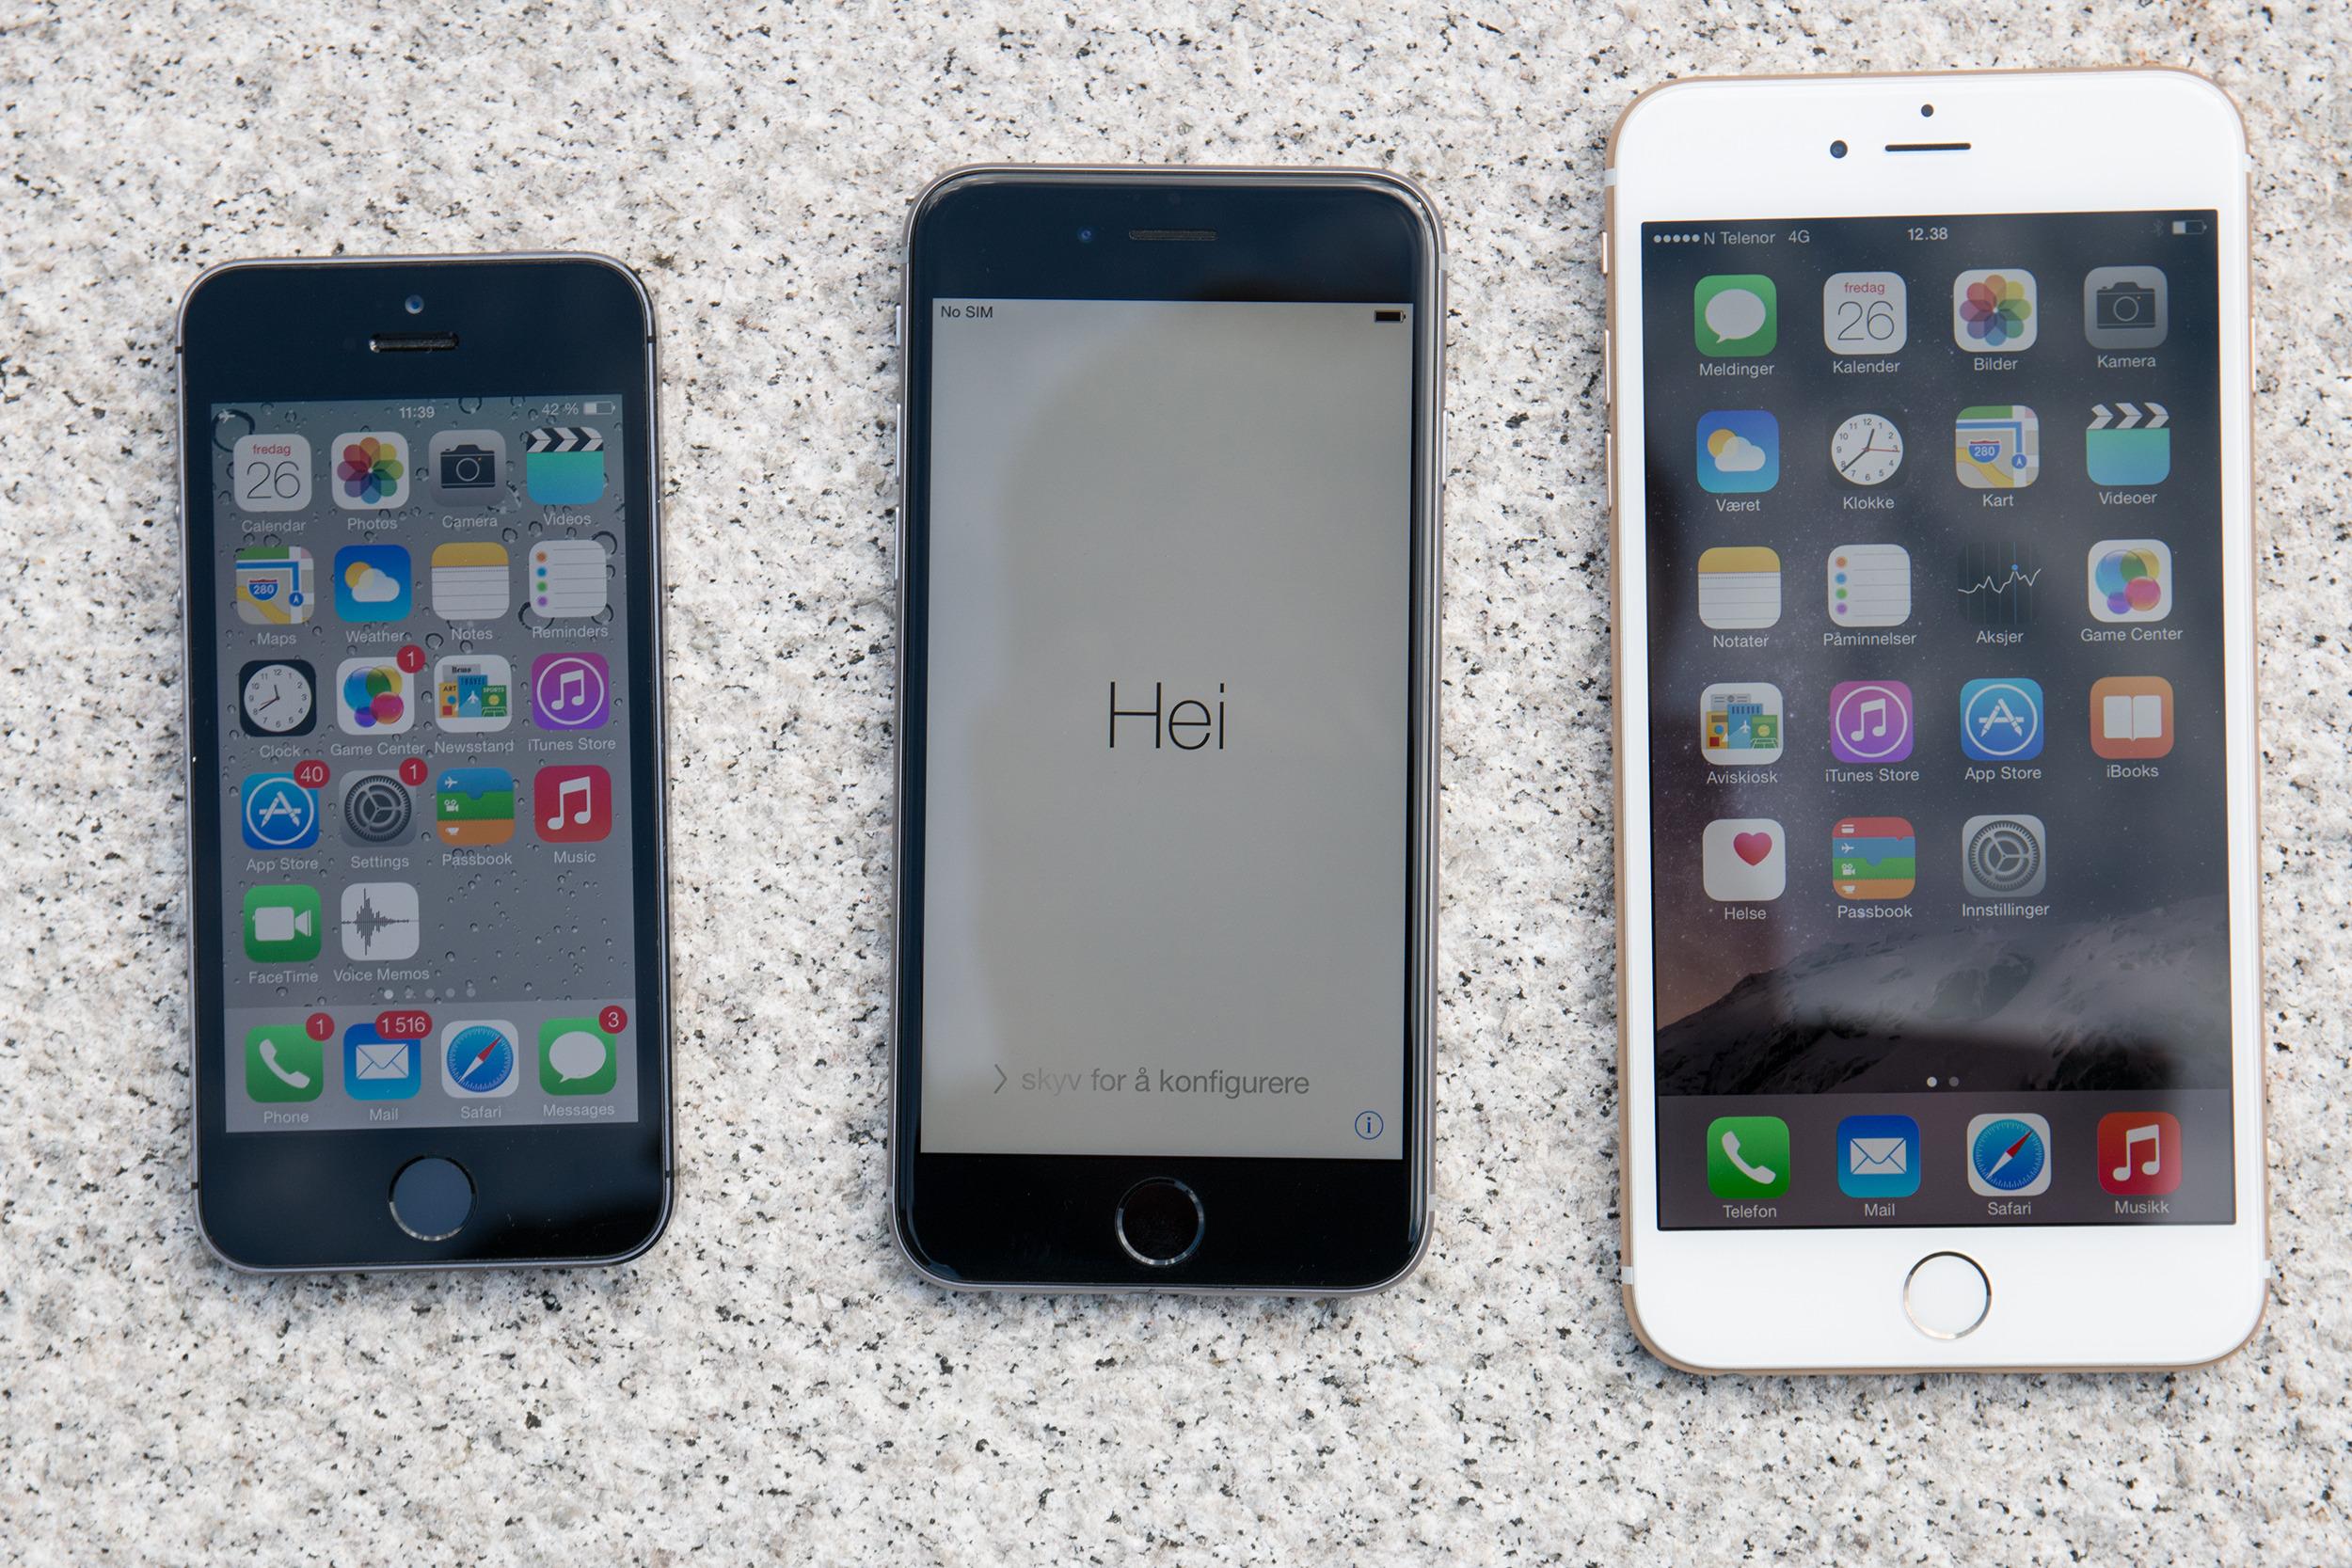 Ved lanseringen i fjor var det flere som mente at gigantiske iPhone 6 Plus (til høyre) ville spise av iPad-salget. Foto: Jørgen Elton Nilsen, Tek.no